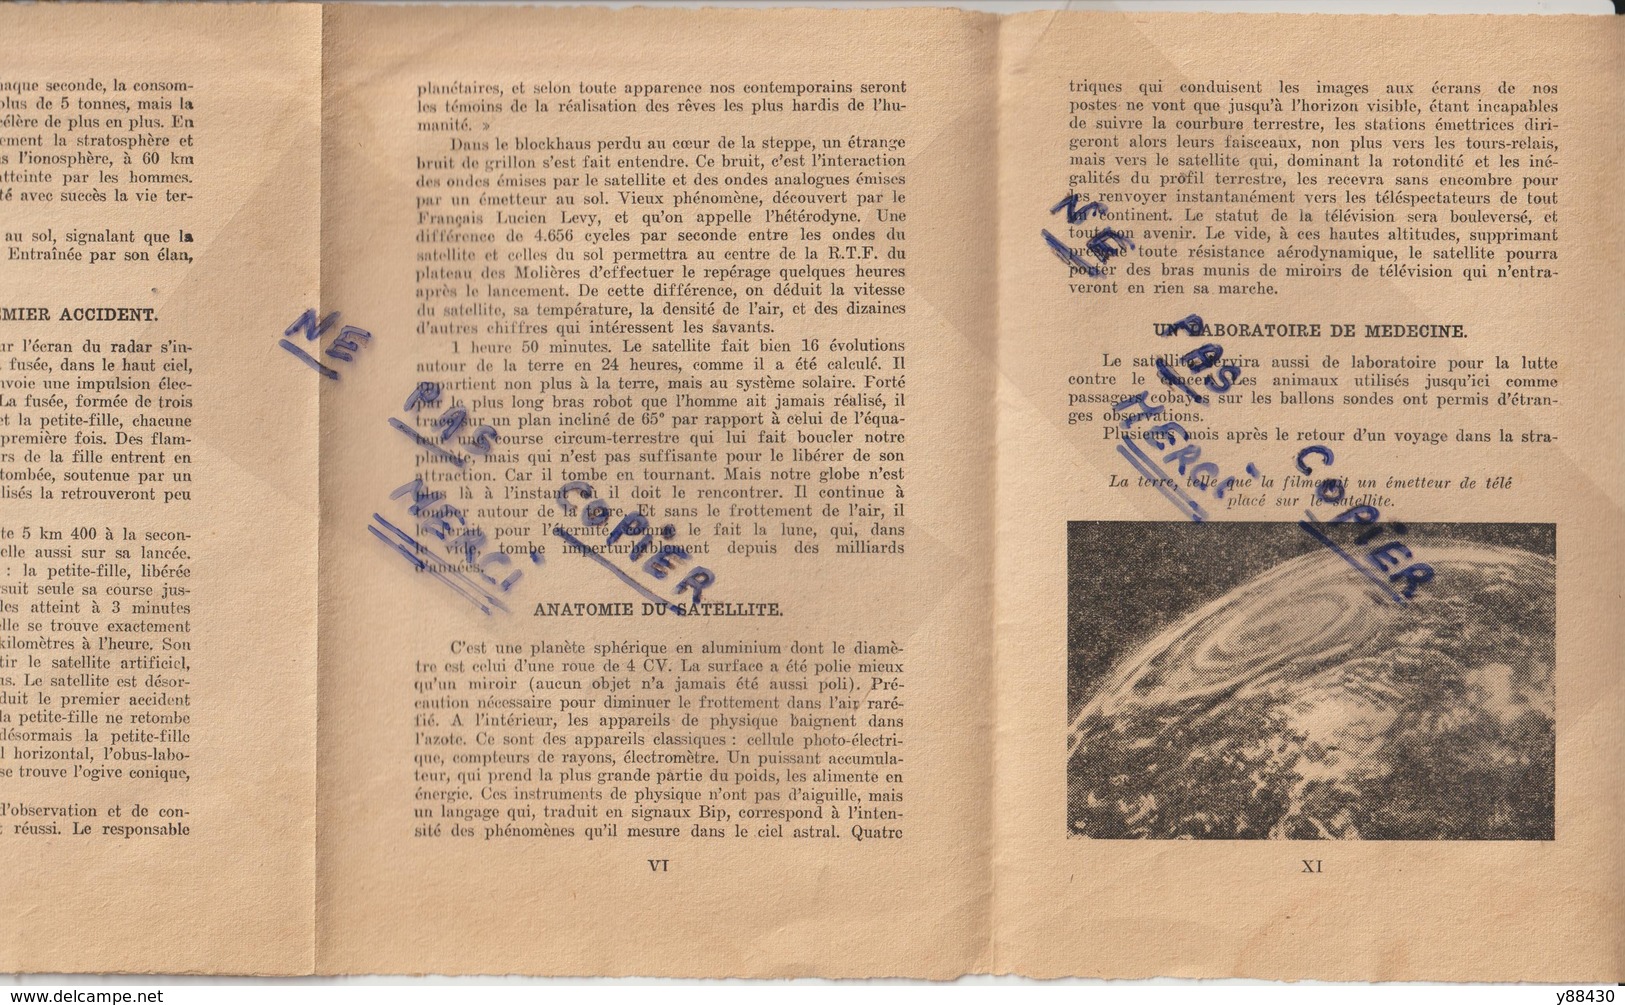 Livret - 1957 - ANNEE ZERO DE L'ERE INTERTERPLANETAIRE - Voir en couverture SIMCA Voiture Aronde de 58 - 11 scannes